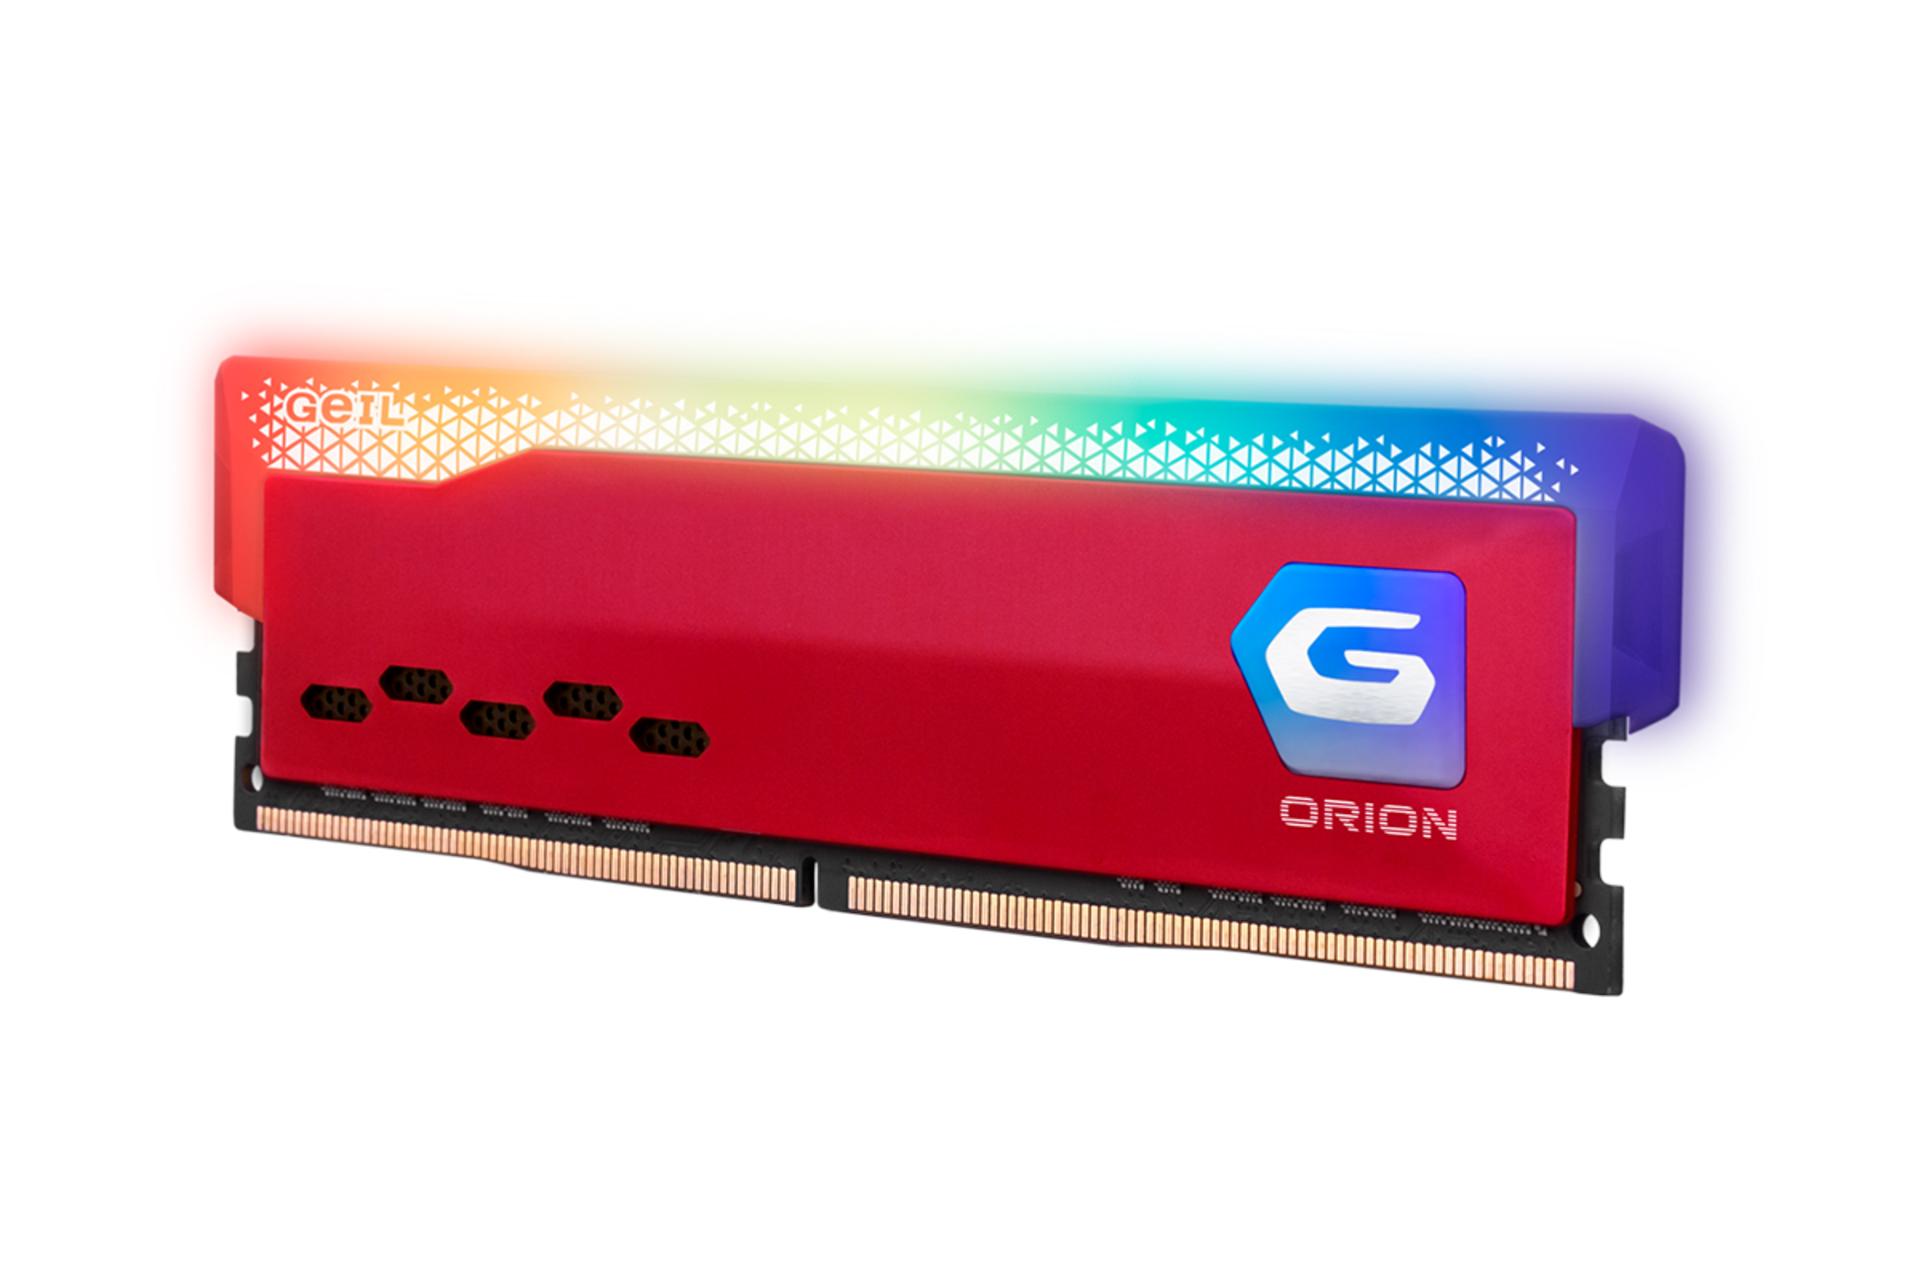 نمای کنار رم گیل ORION RGB AMD ظرفیت 16 گیگابایت از نوع DDR4-3200